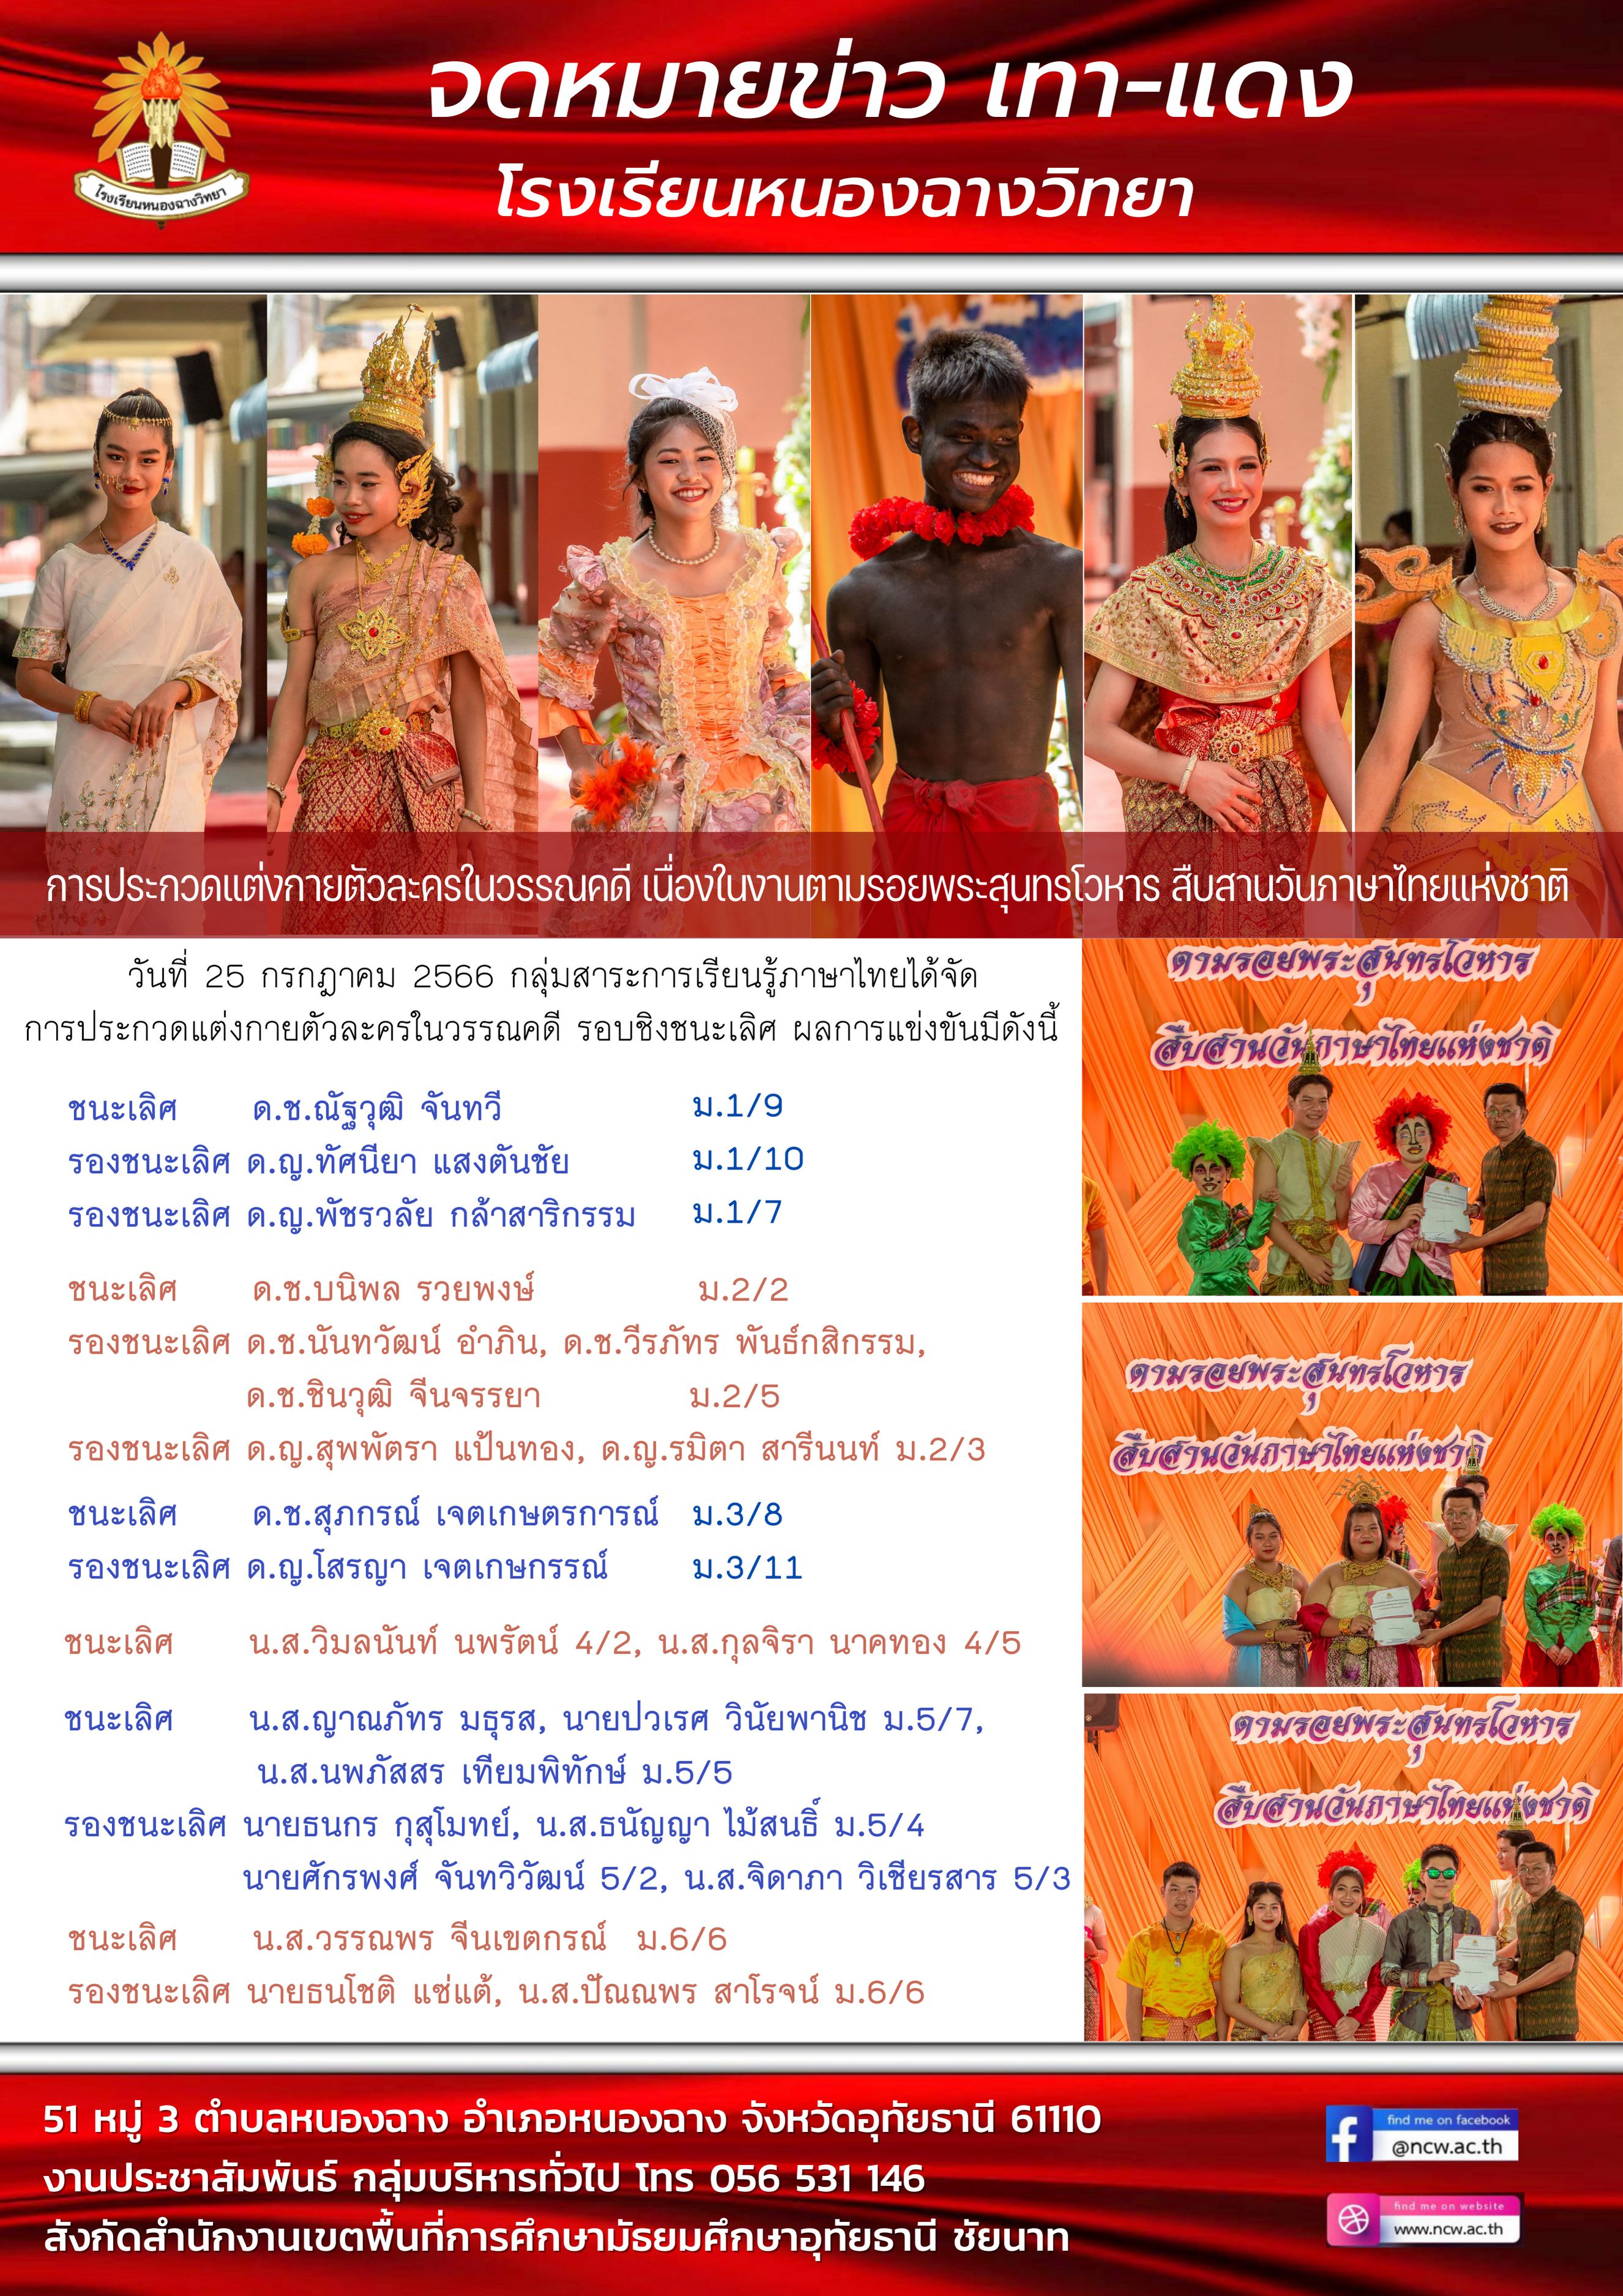 ข่าวสารจากกลุ่มสาระการเรียนรู้ภาษาไทย โรงเรียนหนองฉางวิทยา